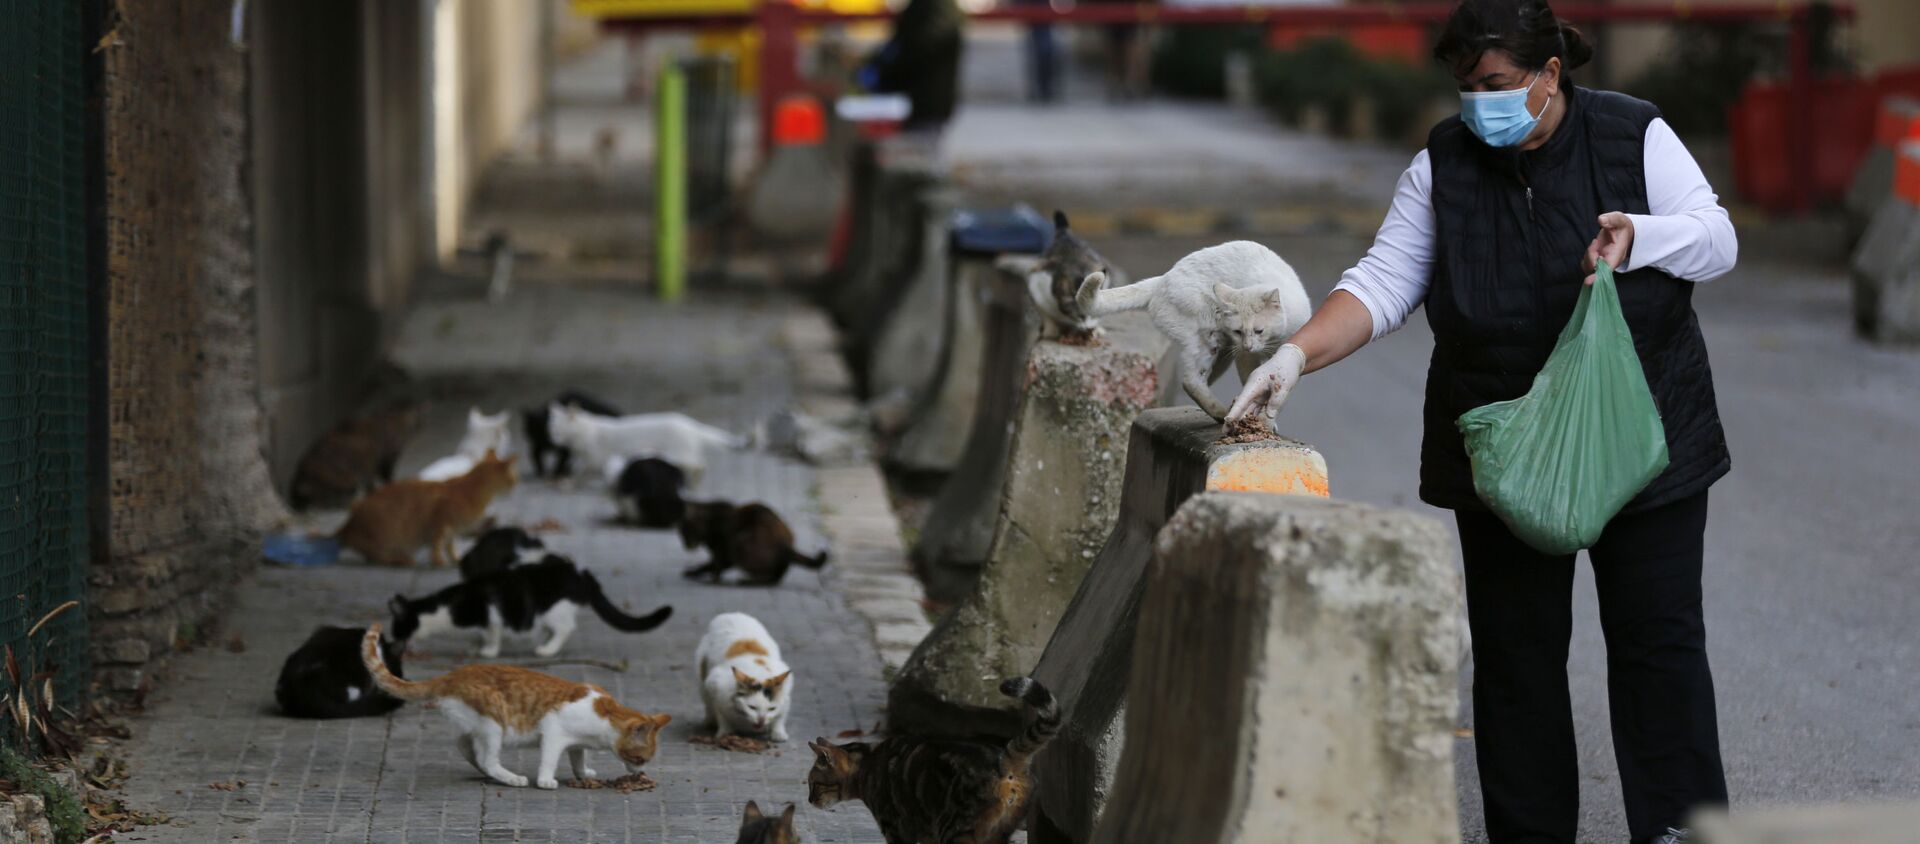 Женщина кормит уличных кошек во время эпидемии коронавируса, Бейрут - Sputnik Абхазия, 1920, 03.06.2020